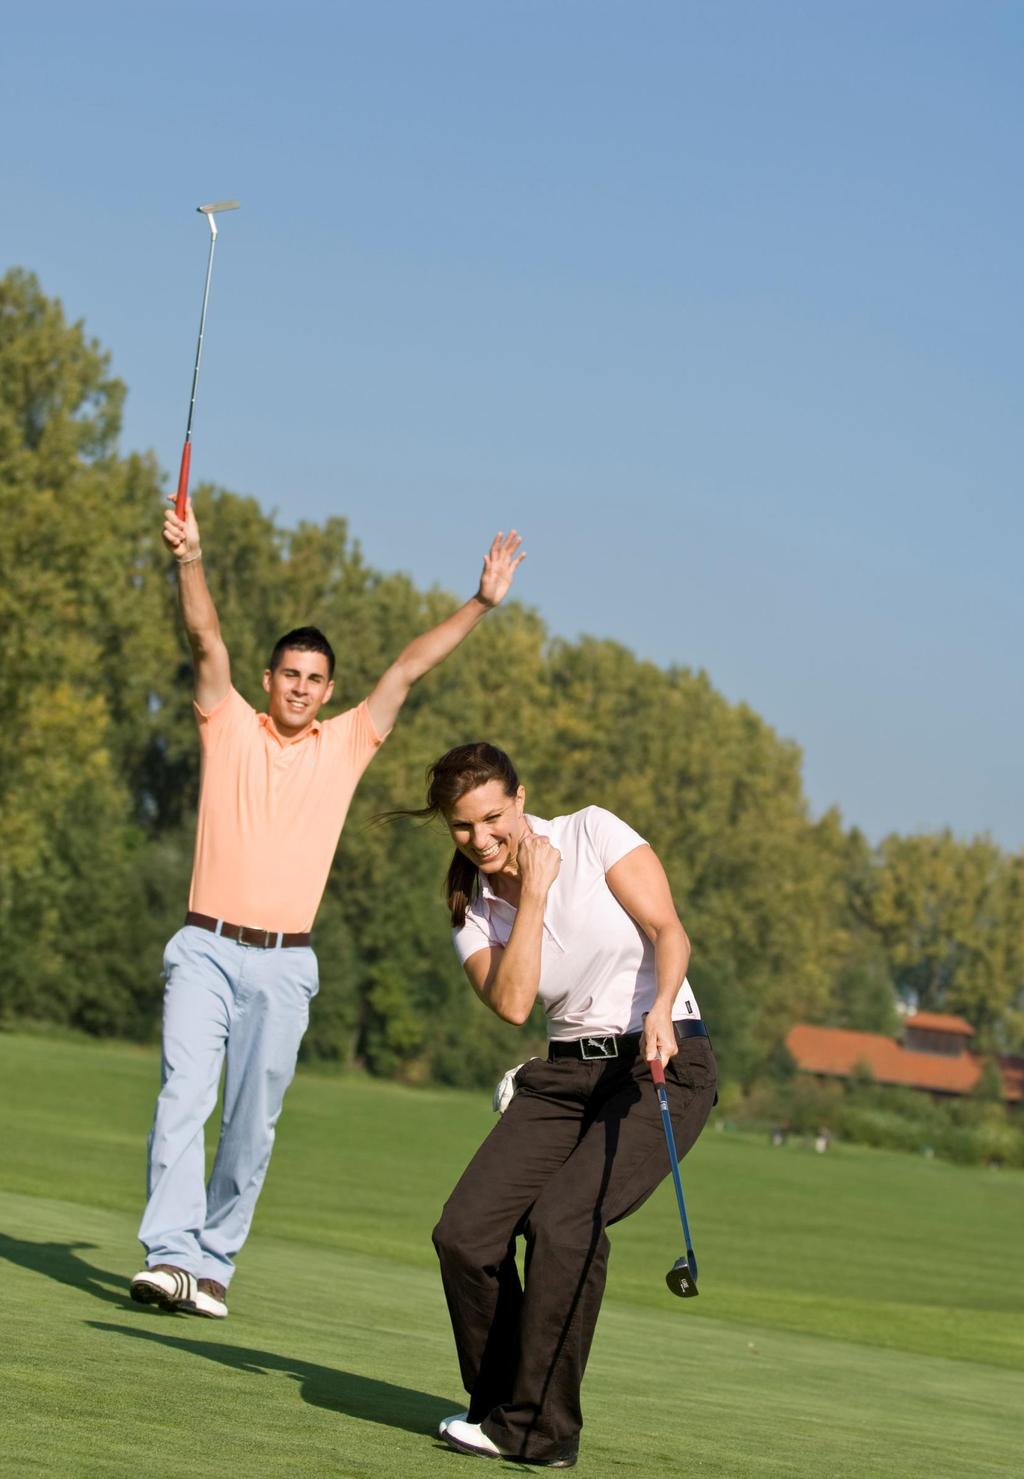 SCHNUPPERKURSE im GC Königsfeld Ausprobieren und Spaß haben! Sie wollten immer schon Golf ausprobieren?